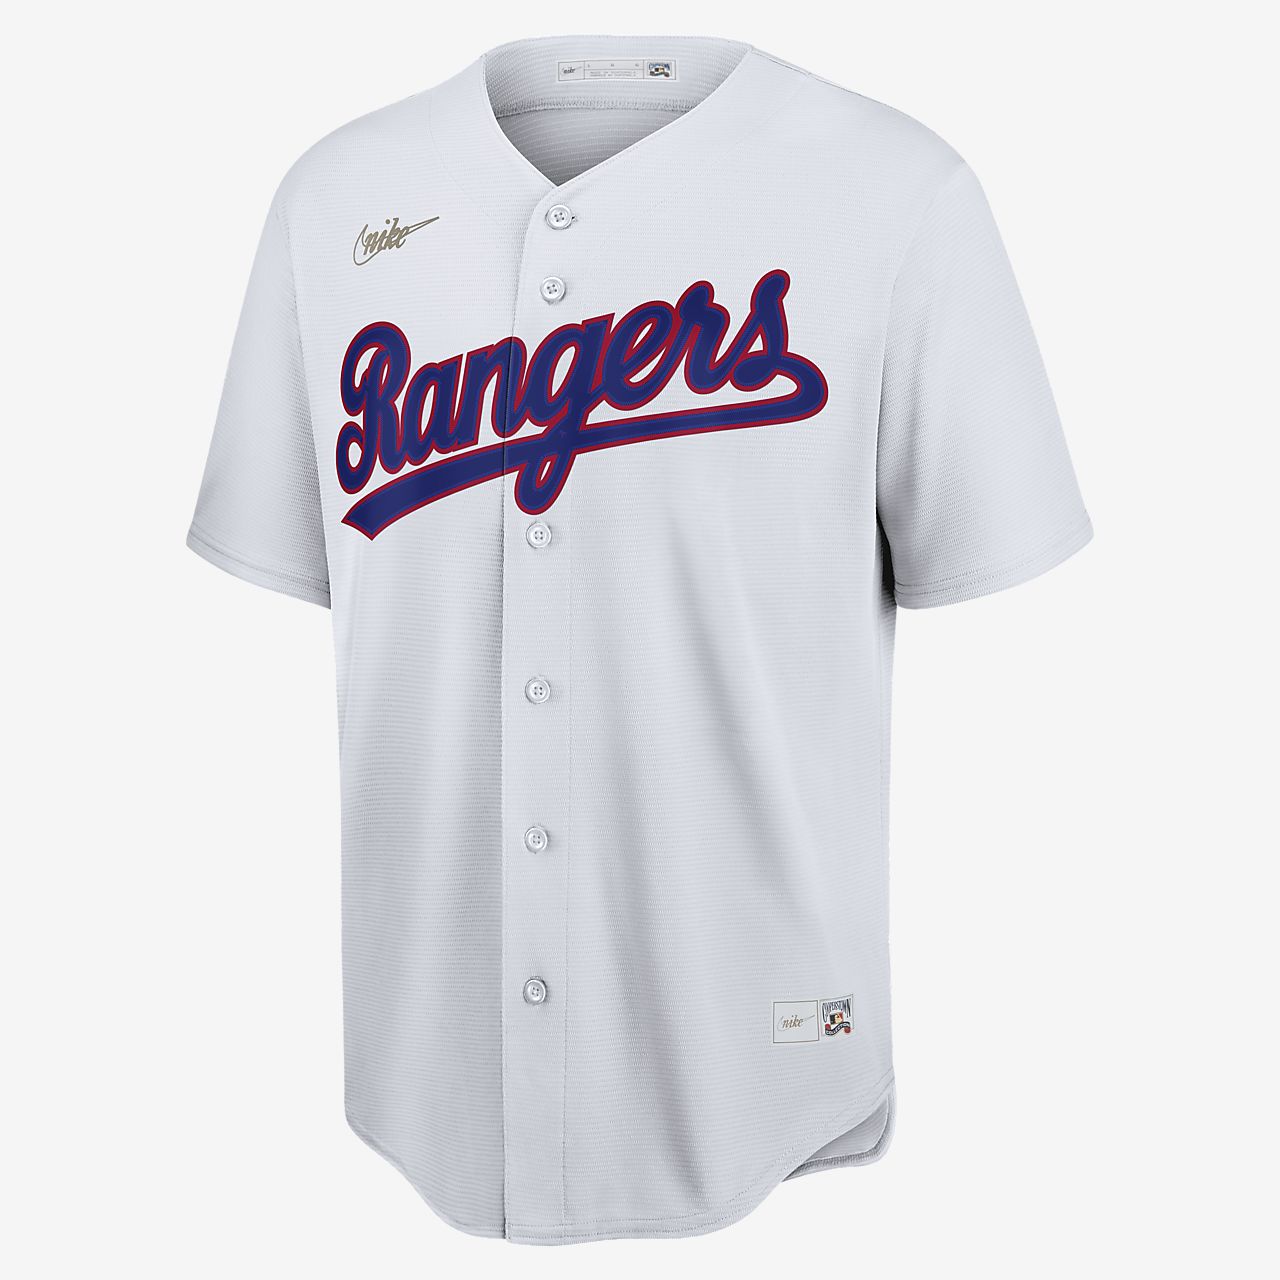 texas rangers baseball jersey